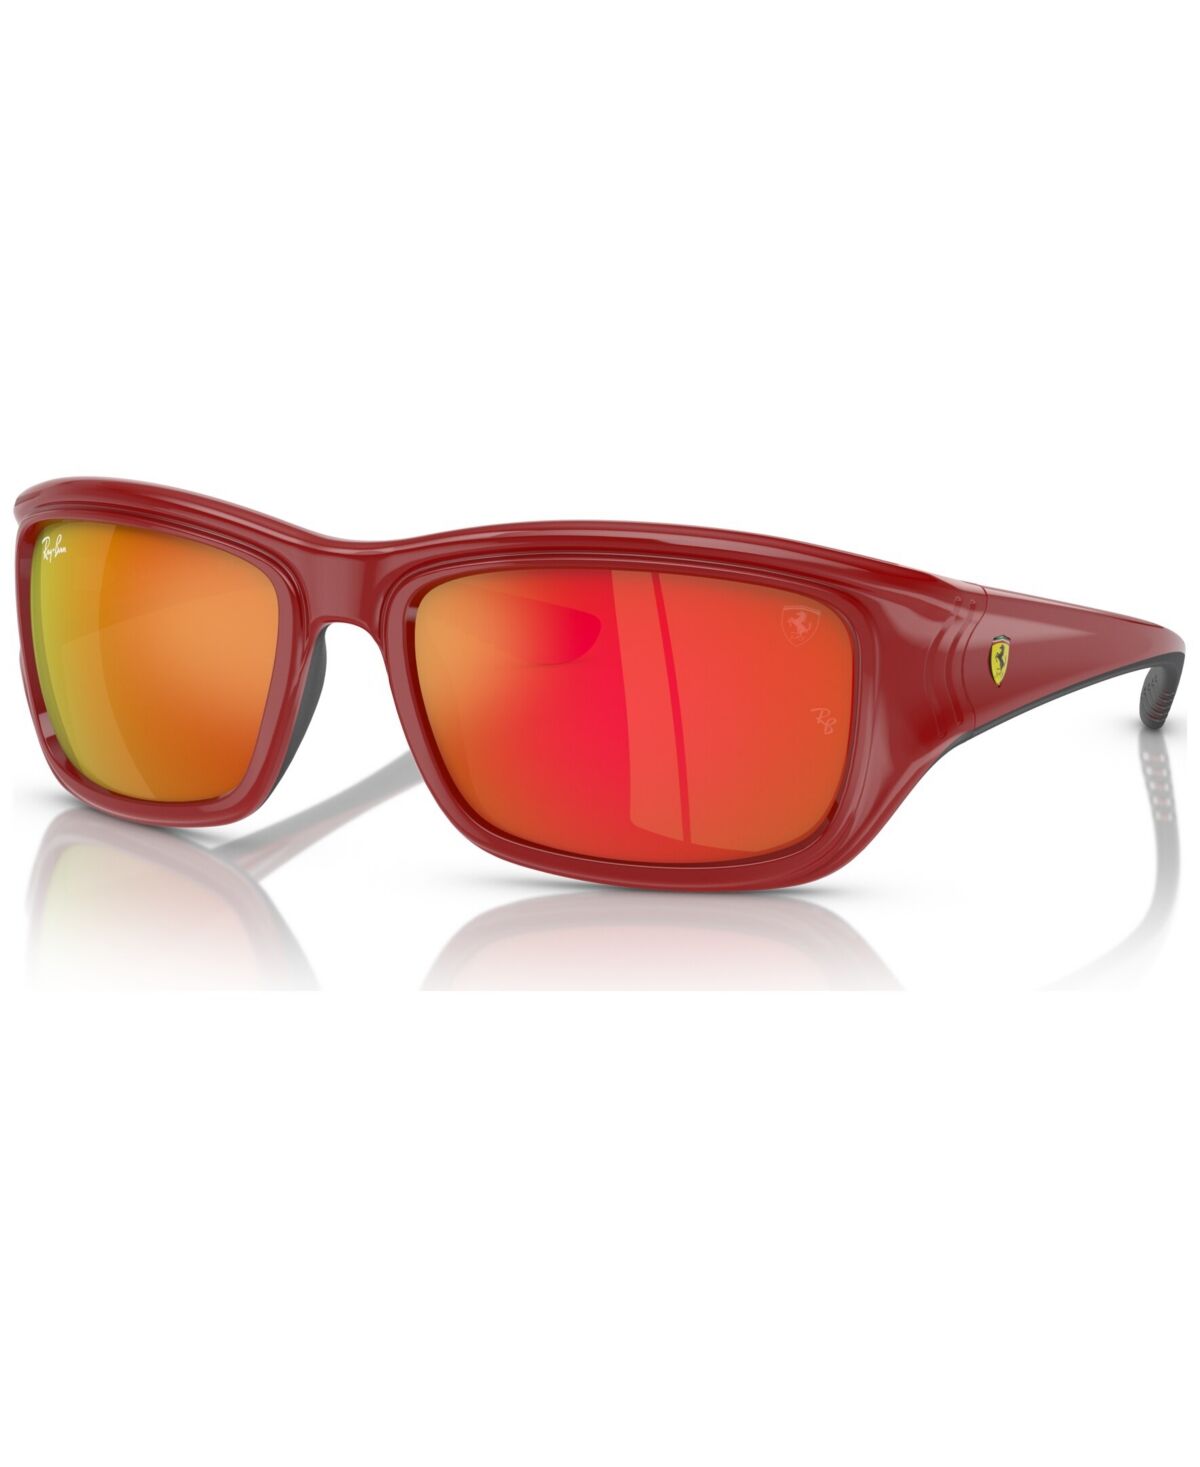 Ray-Ban Men's Sunglasses, RB4405M Scuderia Ferrari Collection - Red on Black